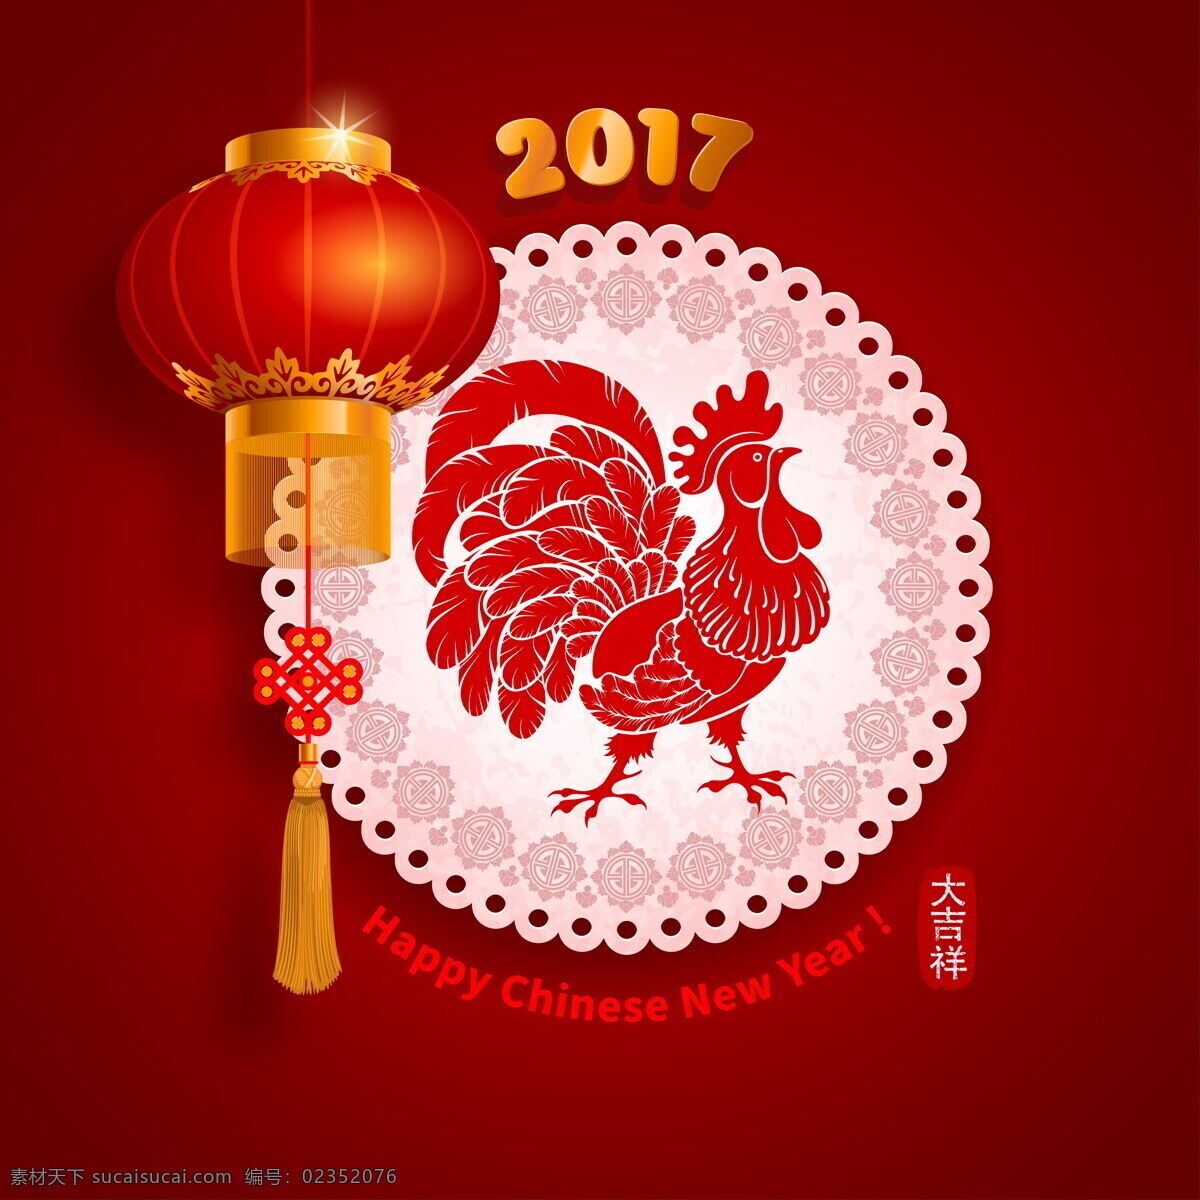 2017 鸡年 新年 大吉 新年图片素材 新年图片 鸡年大吉 鸡年图片 新春 春节 过年